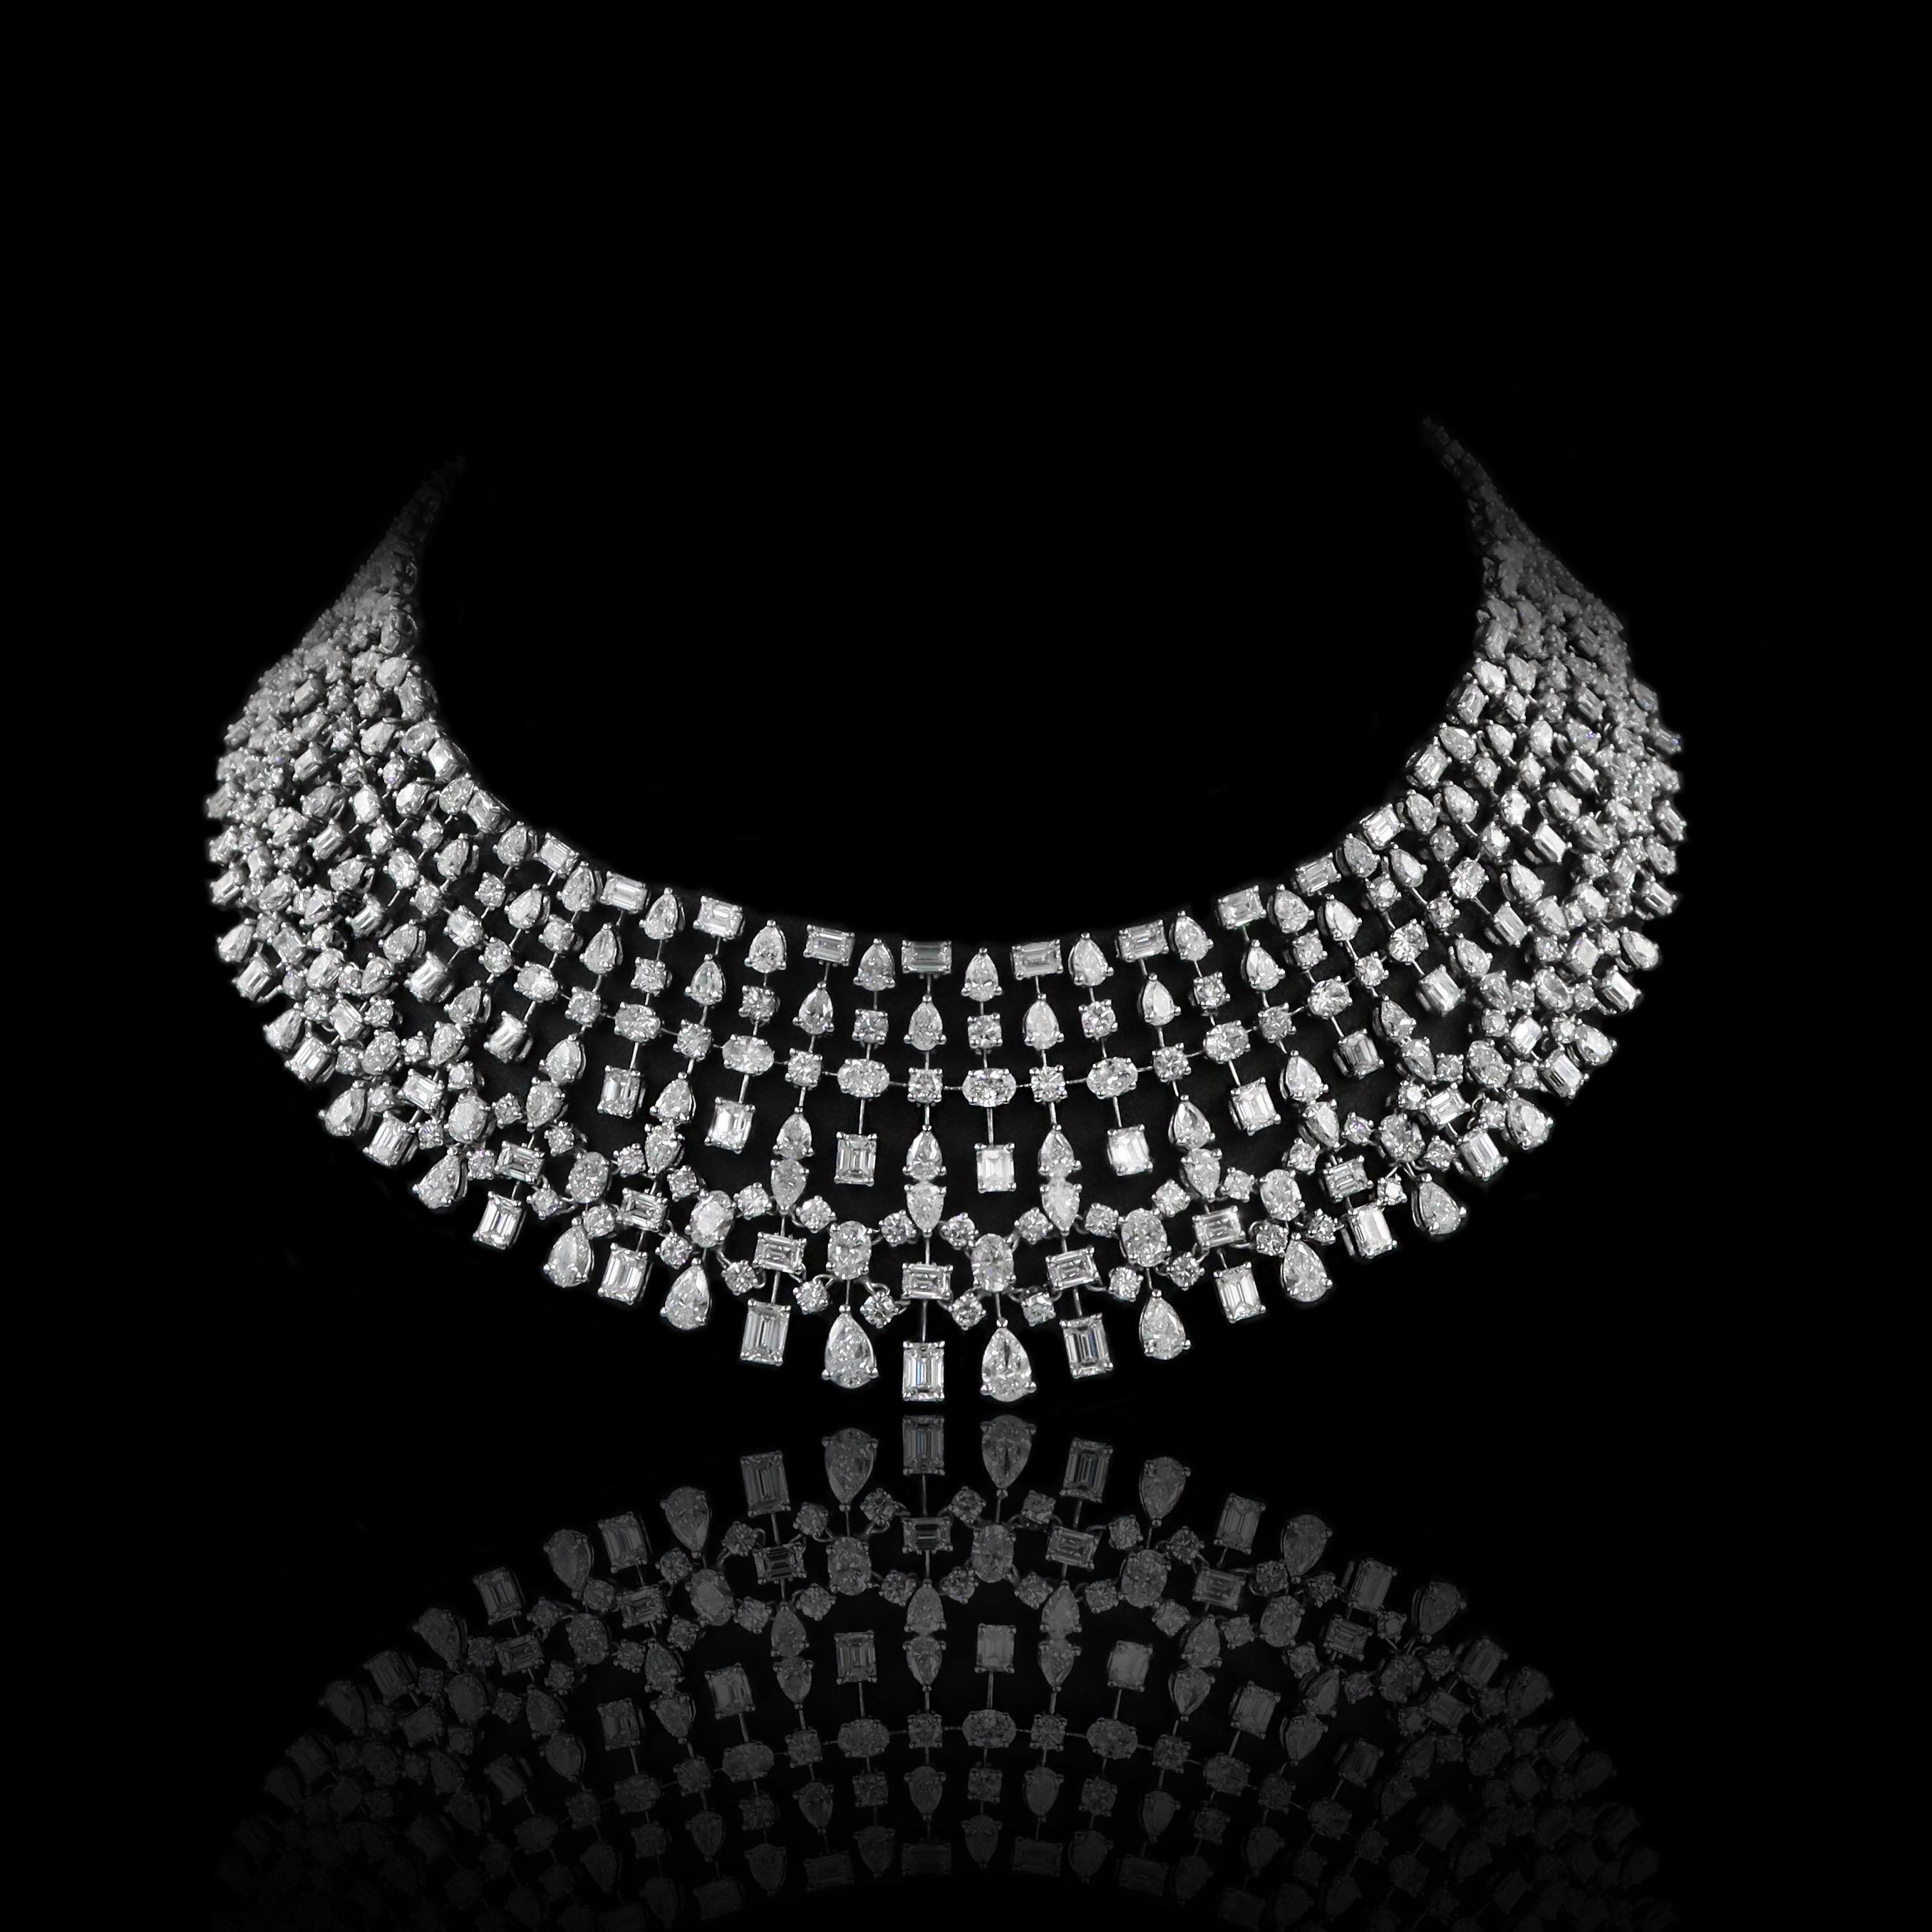 Aus dem Tresor von Emilio Jewelry in der berühmten New Yorker Fifth Avenue,
Diese atemberaubende Halskette ist perfekt für jeden besonderen Anlass, die Gala auf dem roten Teppich, die Hochzeit oder jedes andere wichtige Ereignis. 
Gewicht des